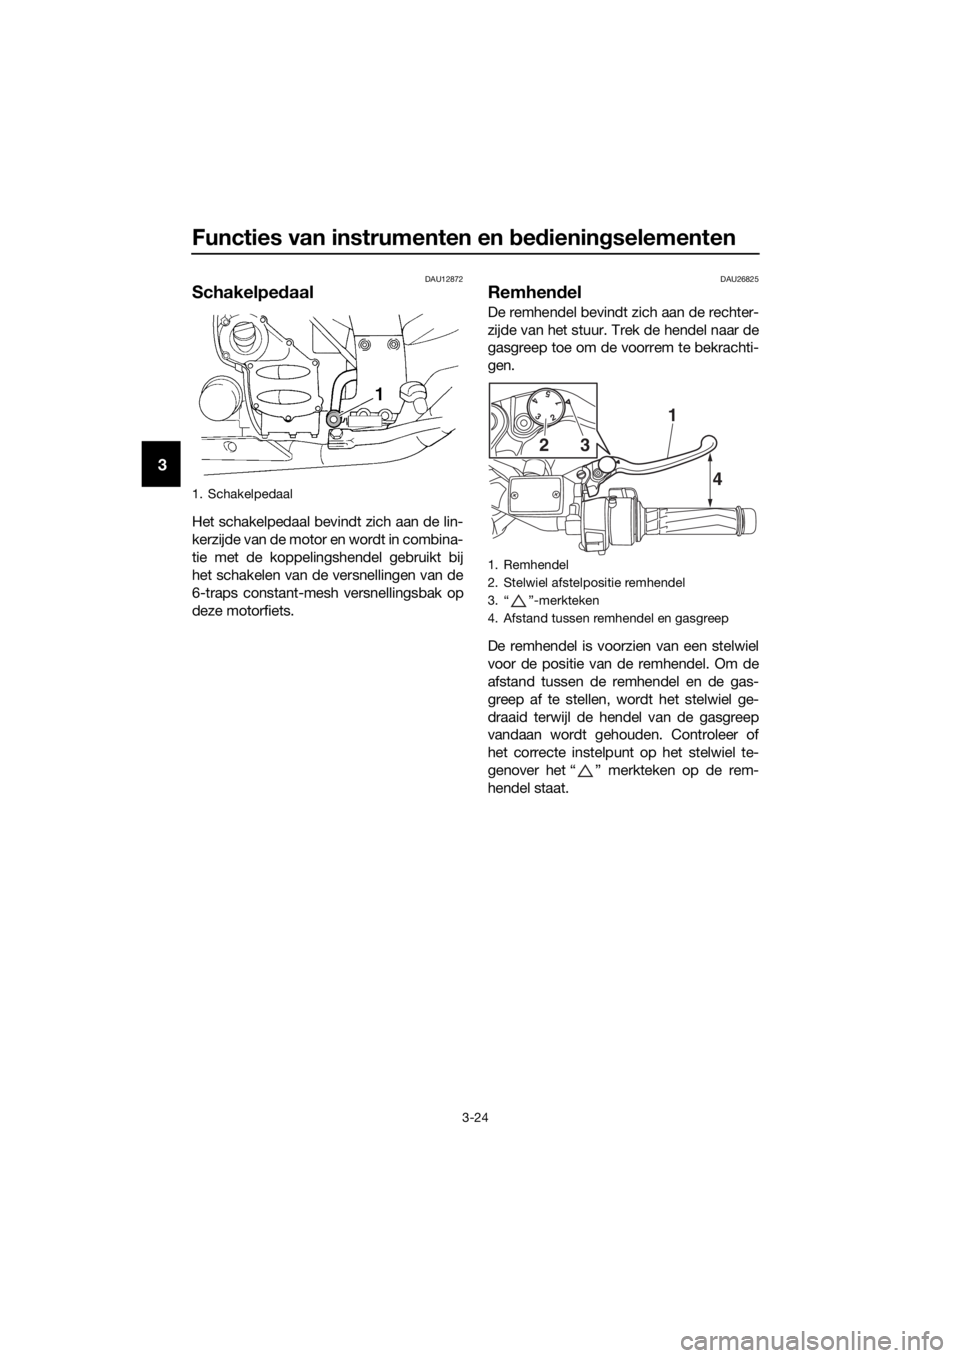 YAMAHA FJR1300A 2016  Instructieboekje (in Dutch) Functies van instrumenten en bed iening selementen
3-24
3
DAU12872
Schakelpe daal
Het schakelpedaal bevindt zich aan de lin-
kerzijde van de motor en wordt in combina-
tie met de koppelingshendel gebr